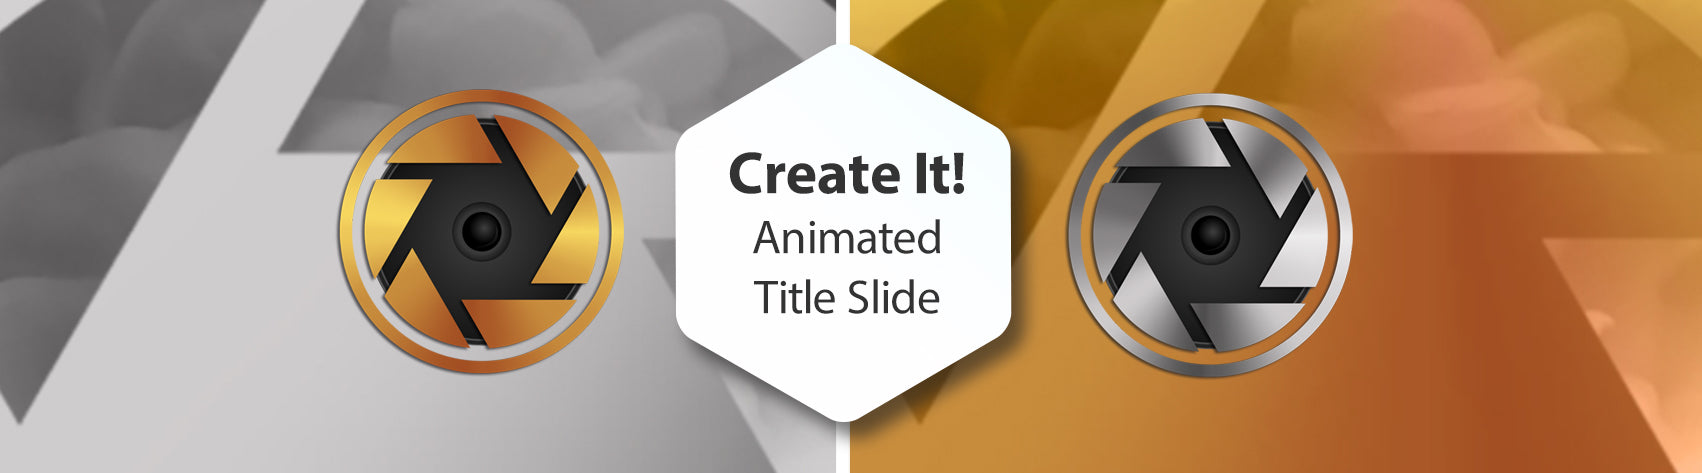 Create It! - Animated Title Slide